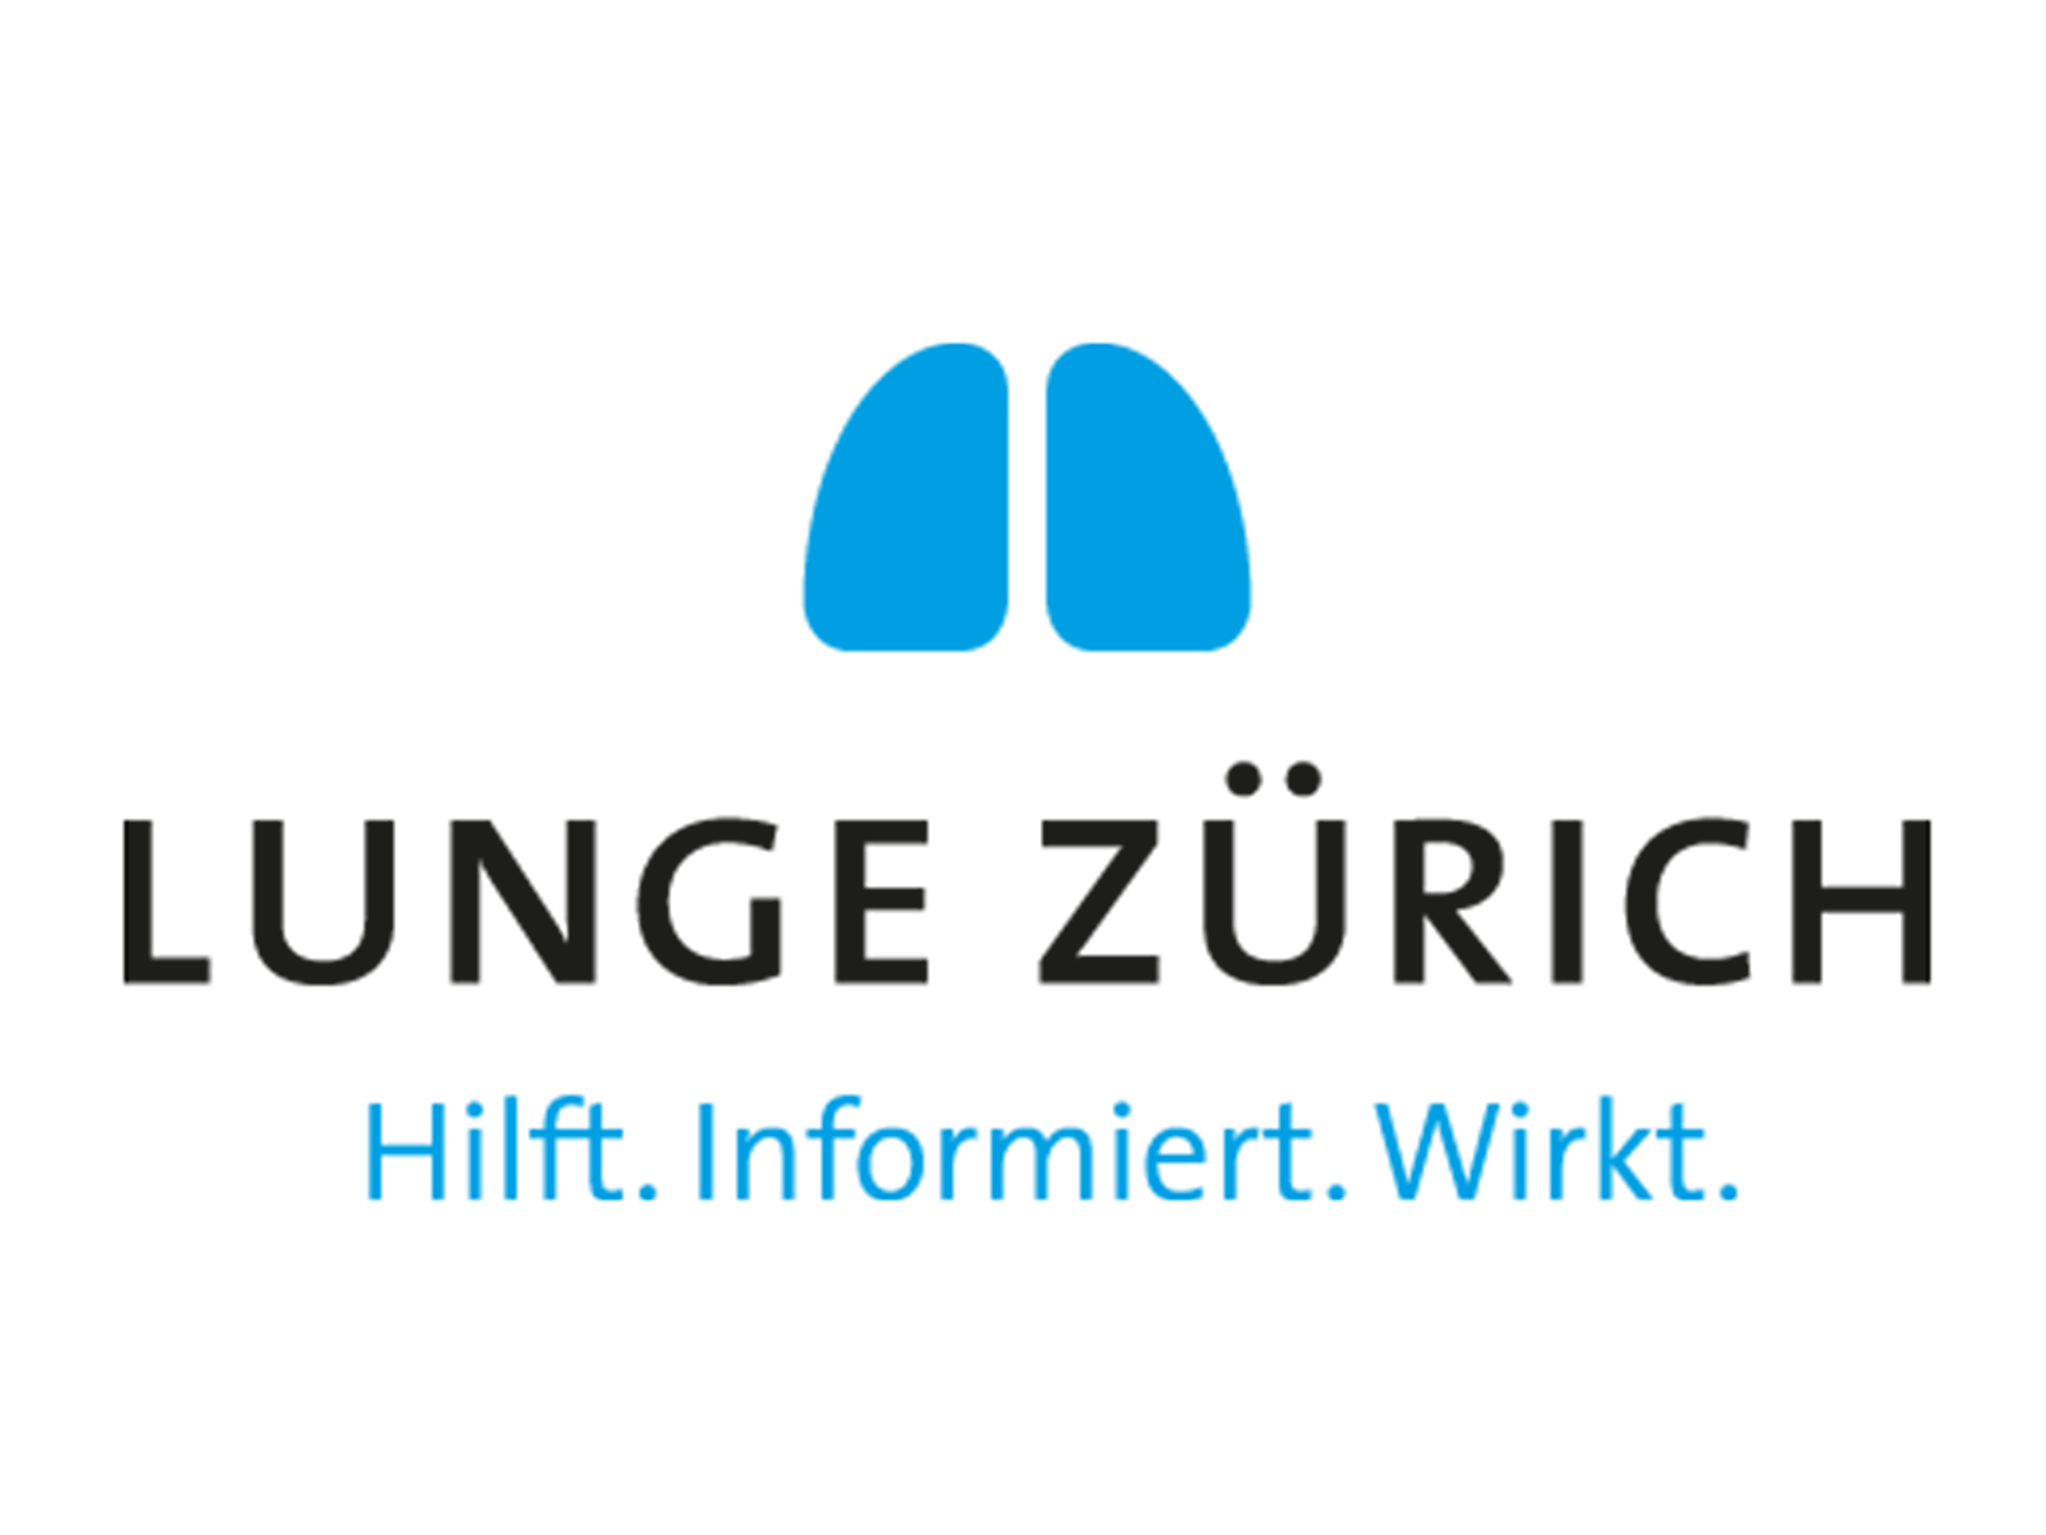 Lunge Zürich